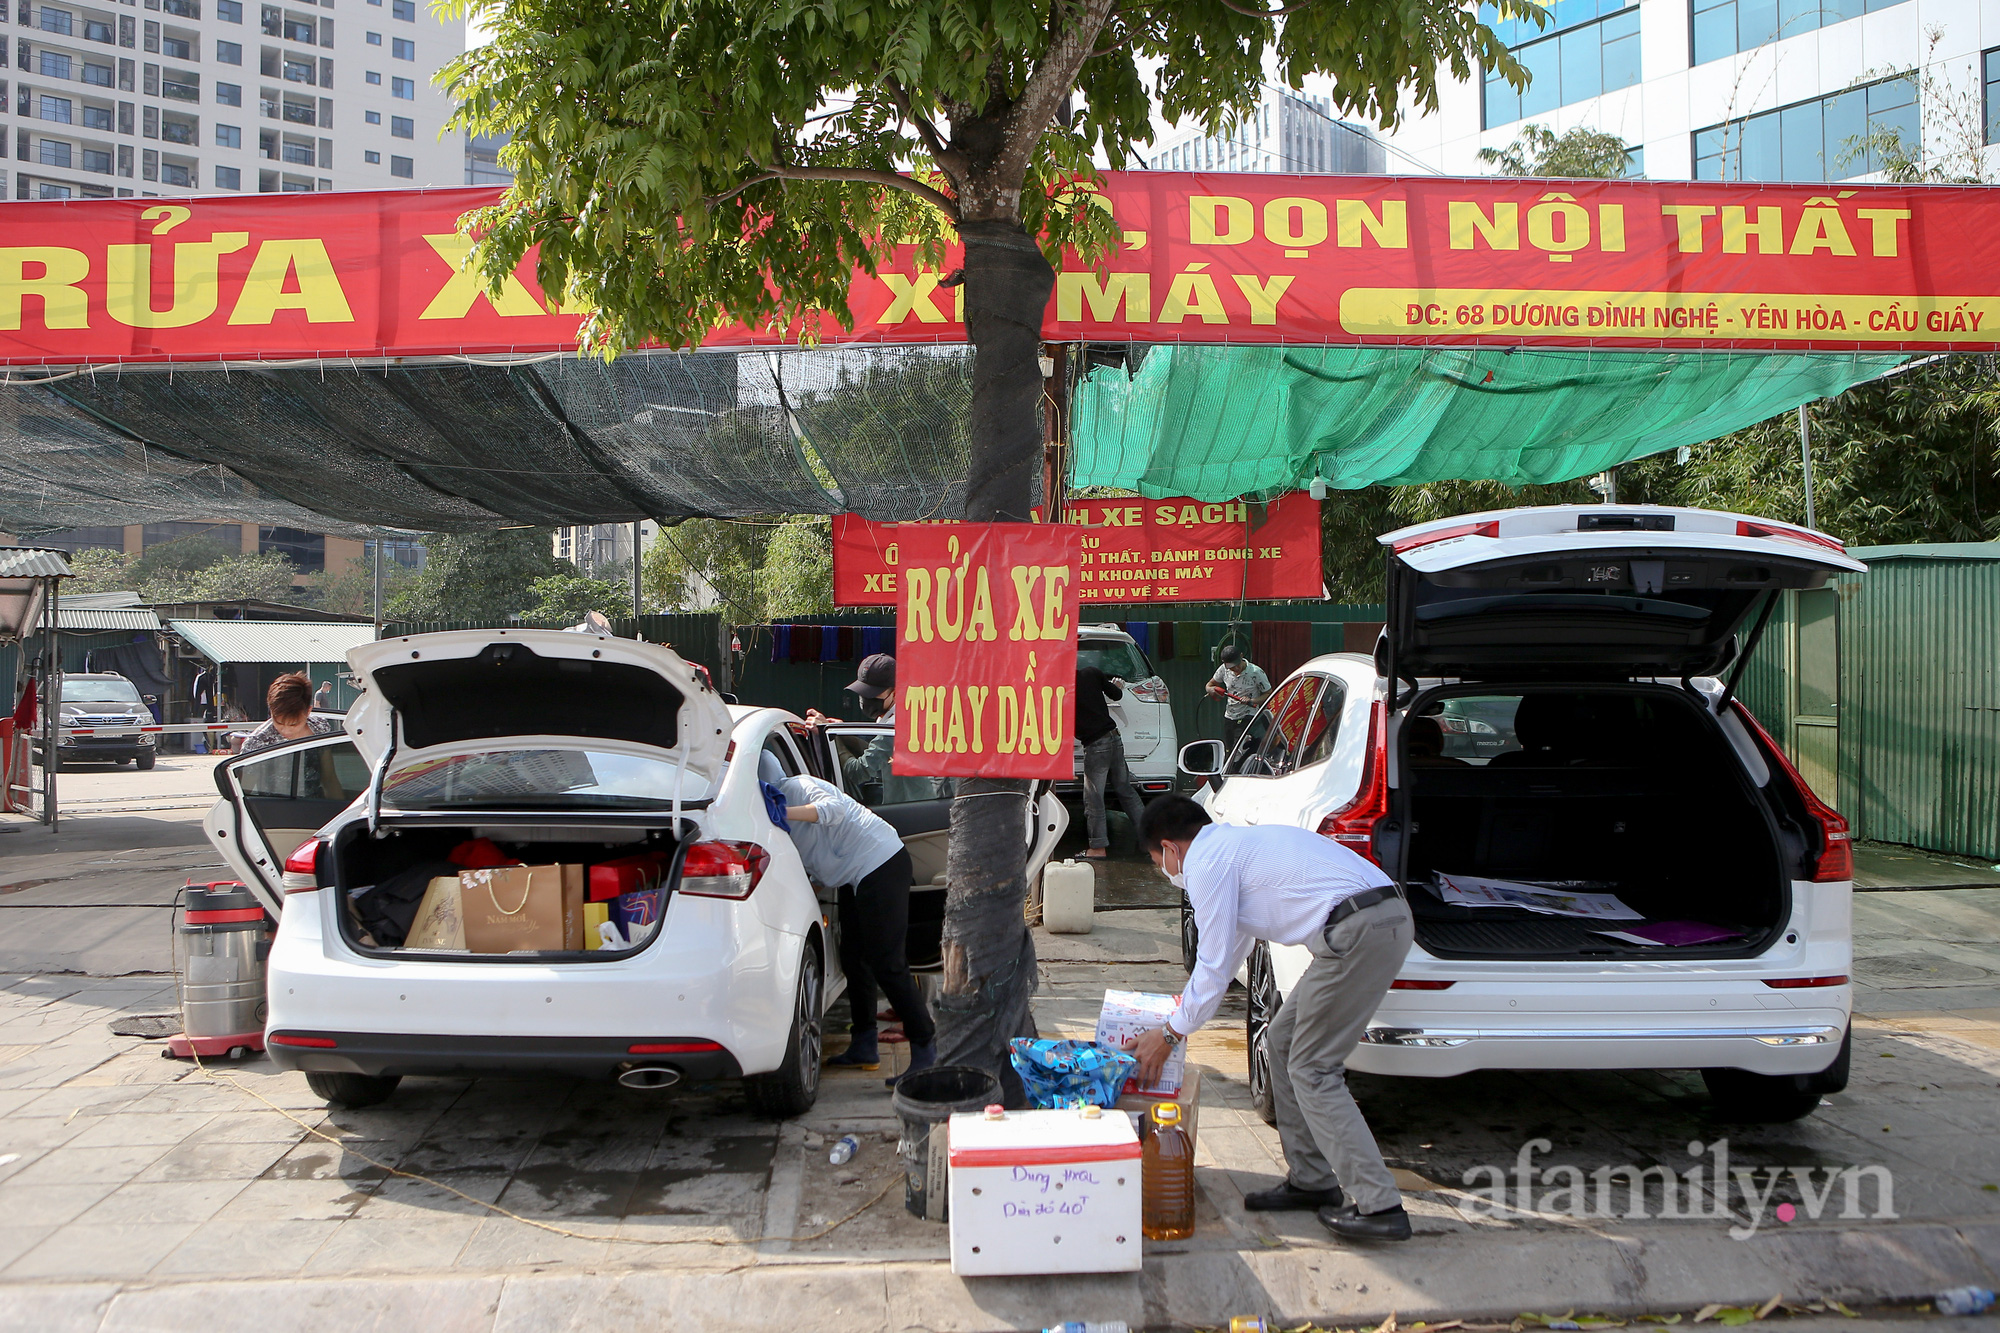 Tại cửa hàng rửa xe trên đường Dương Đình Nghệ (quận Cầu Giấy) luôn tấp nập xe ô tô ra vào để rửa xe, dọn nội thất.